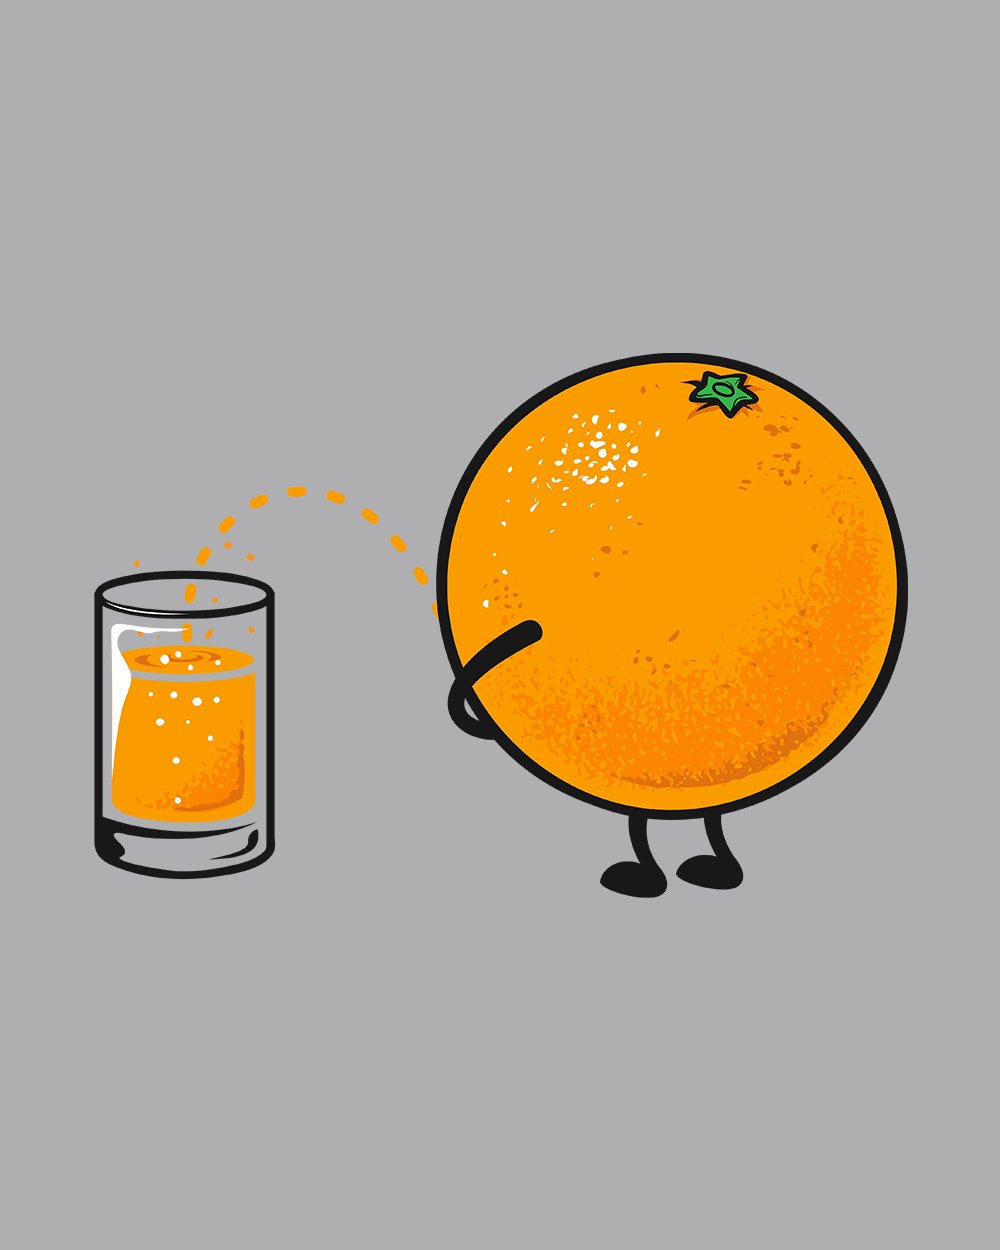 Orange Juice T-Shirt Australia Online #colour_red